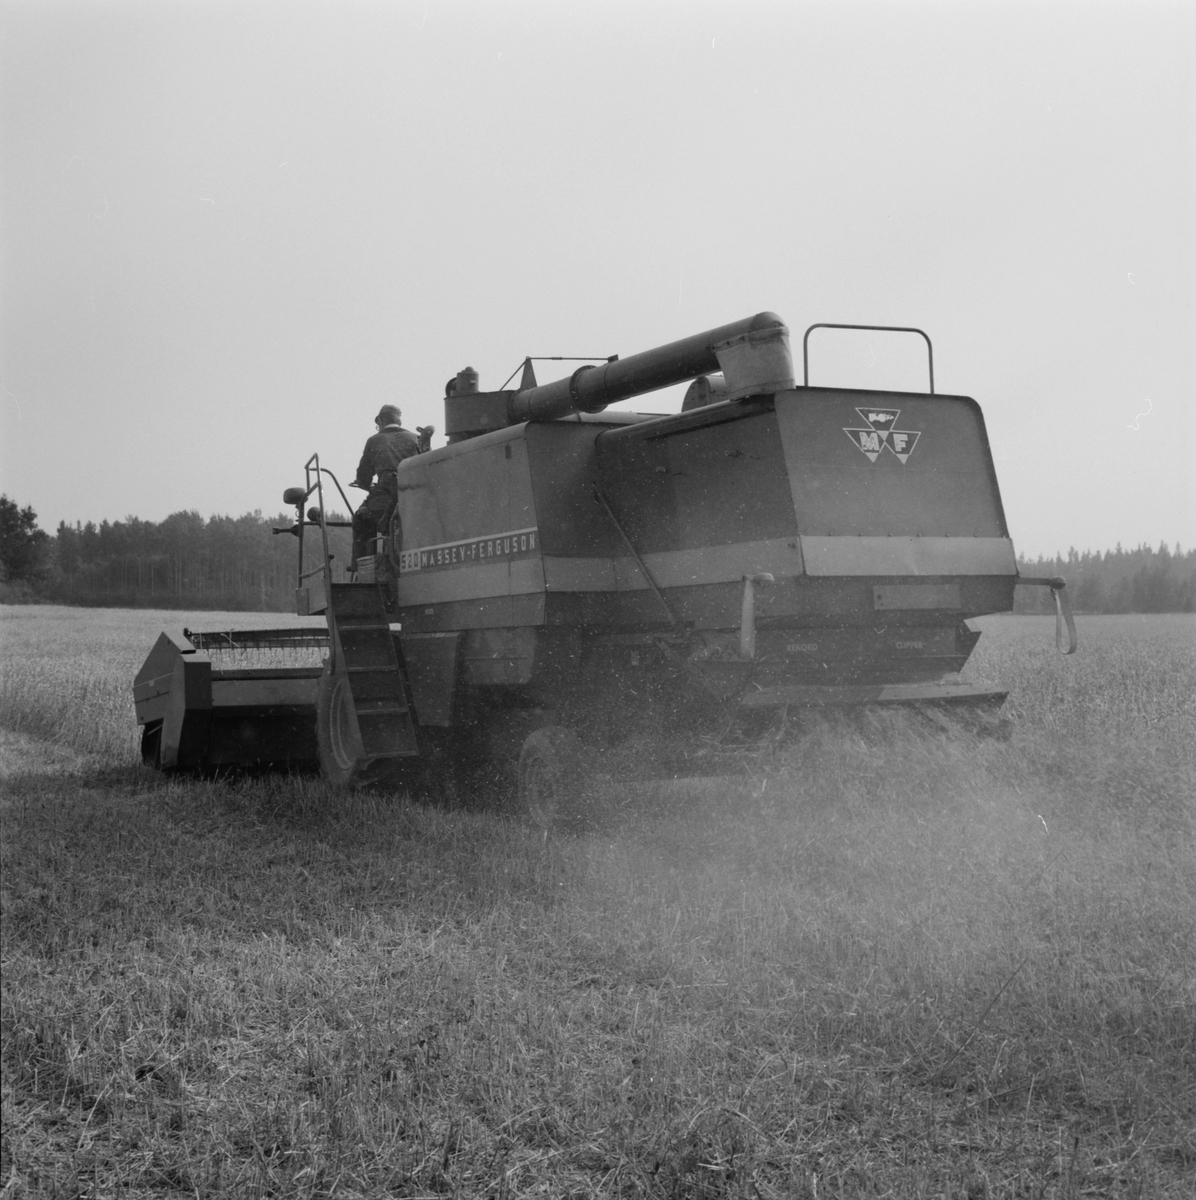 Jordbrukare Ove Leijon tröskar en kornåker, Stora Bärsta, Uppsala-Näs socken, Uppland september 1981